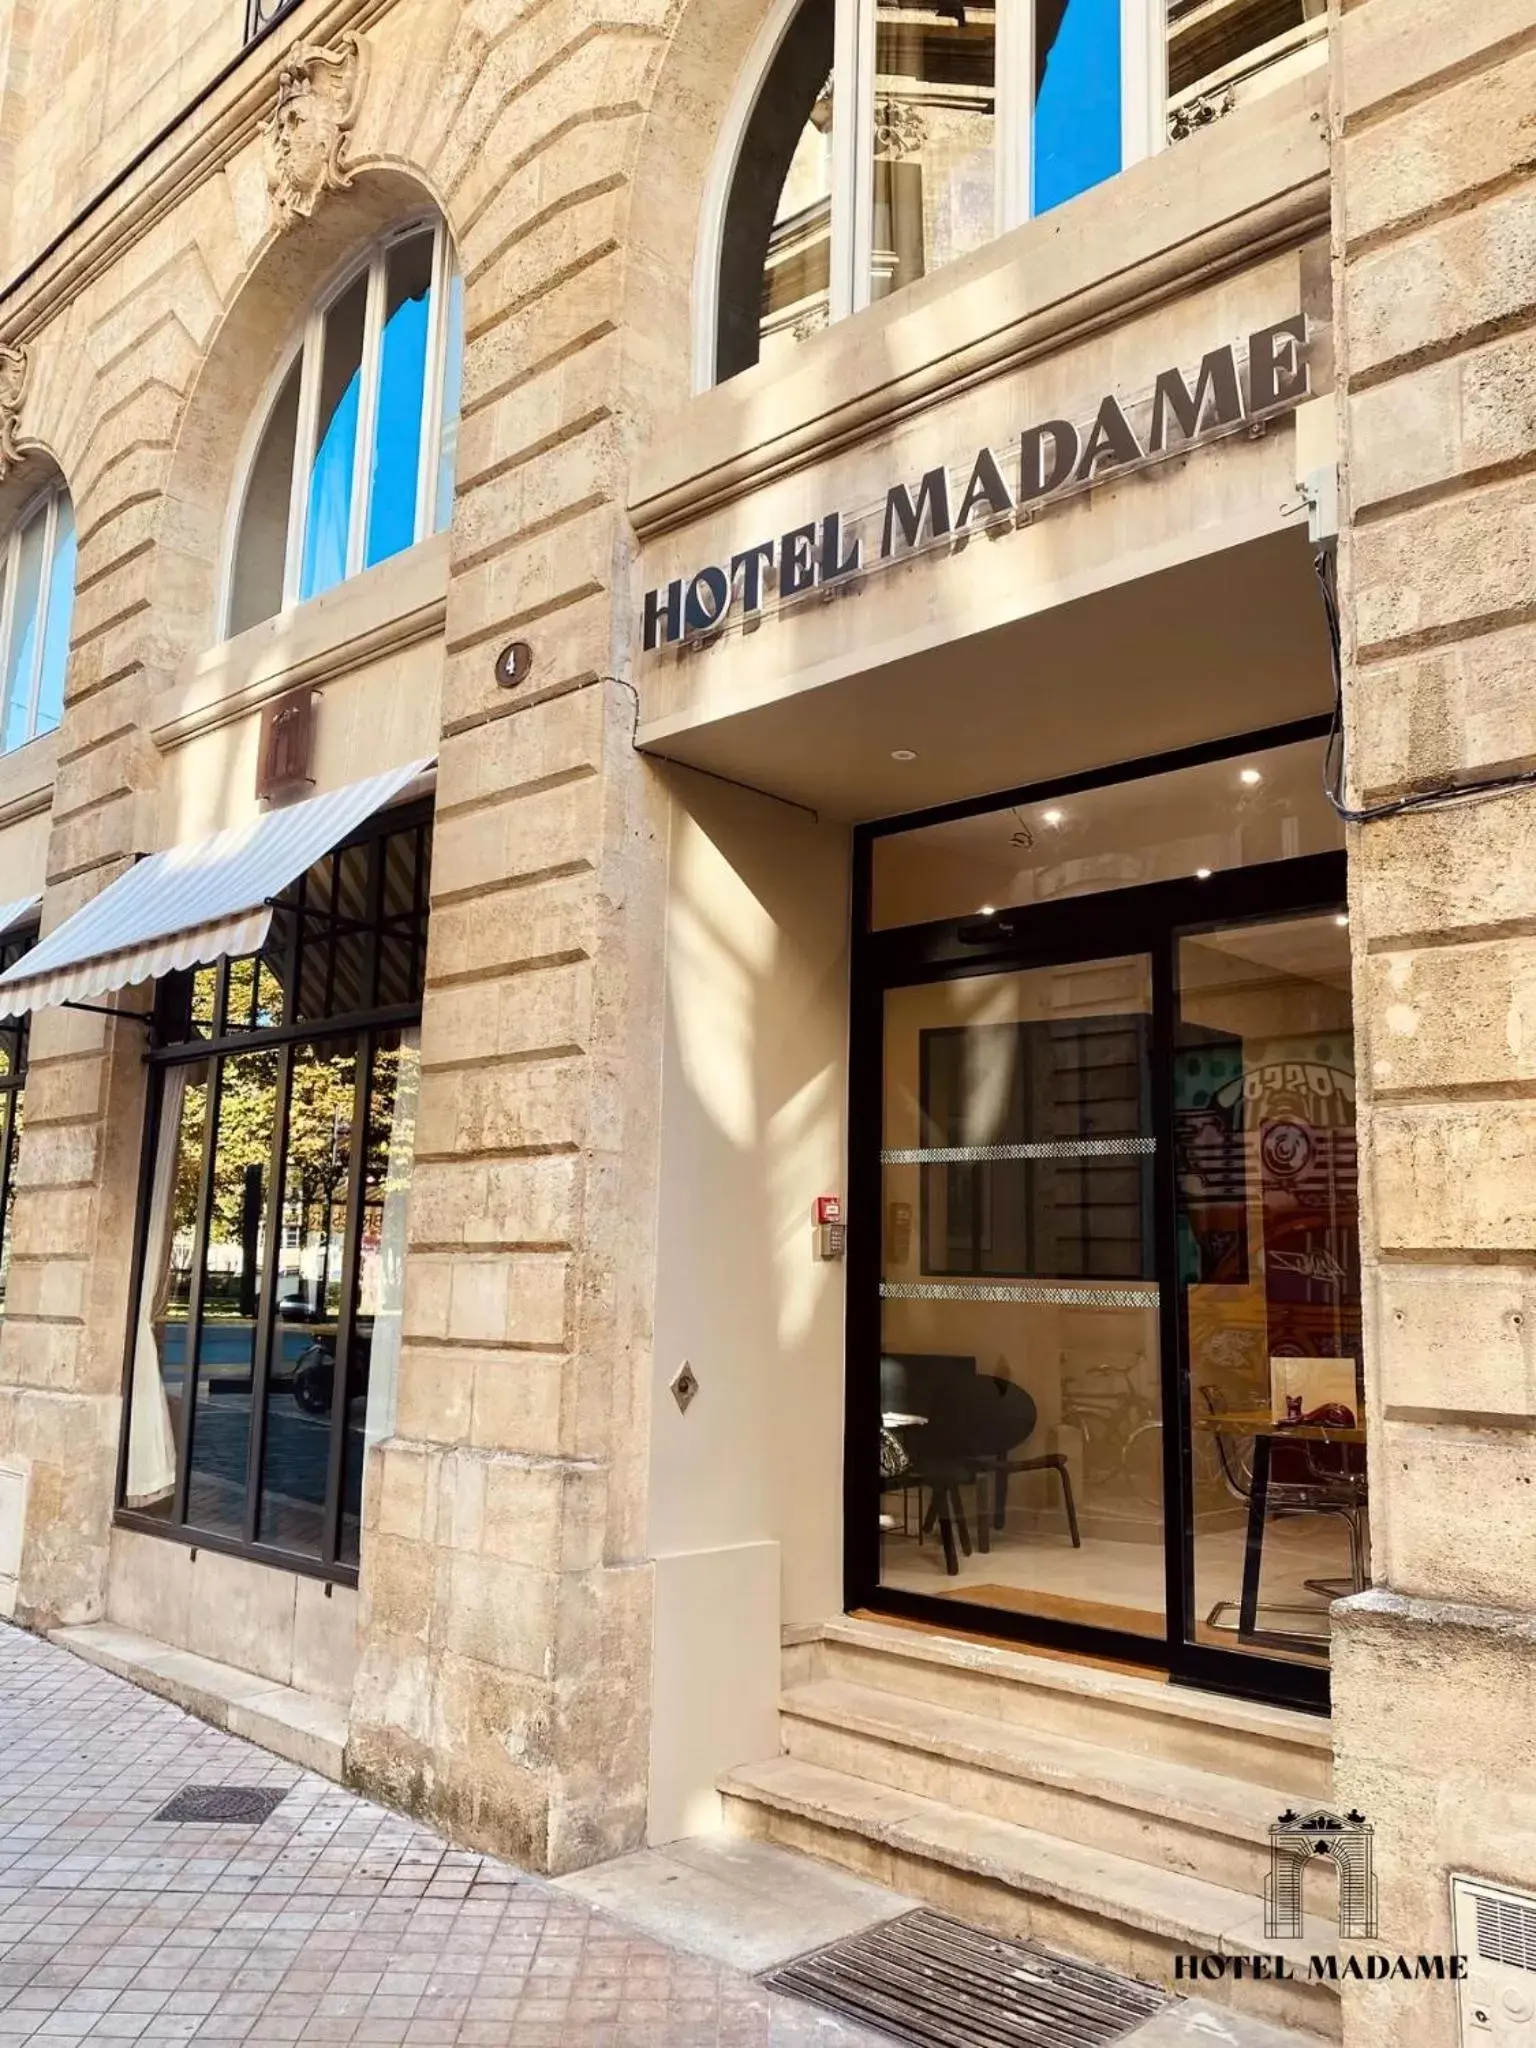 Facade/entrance in Hôtel Madame